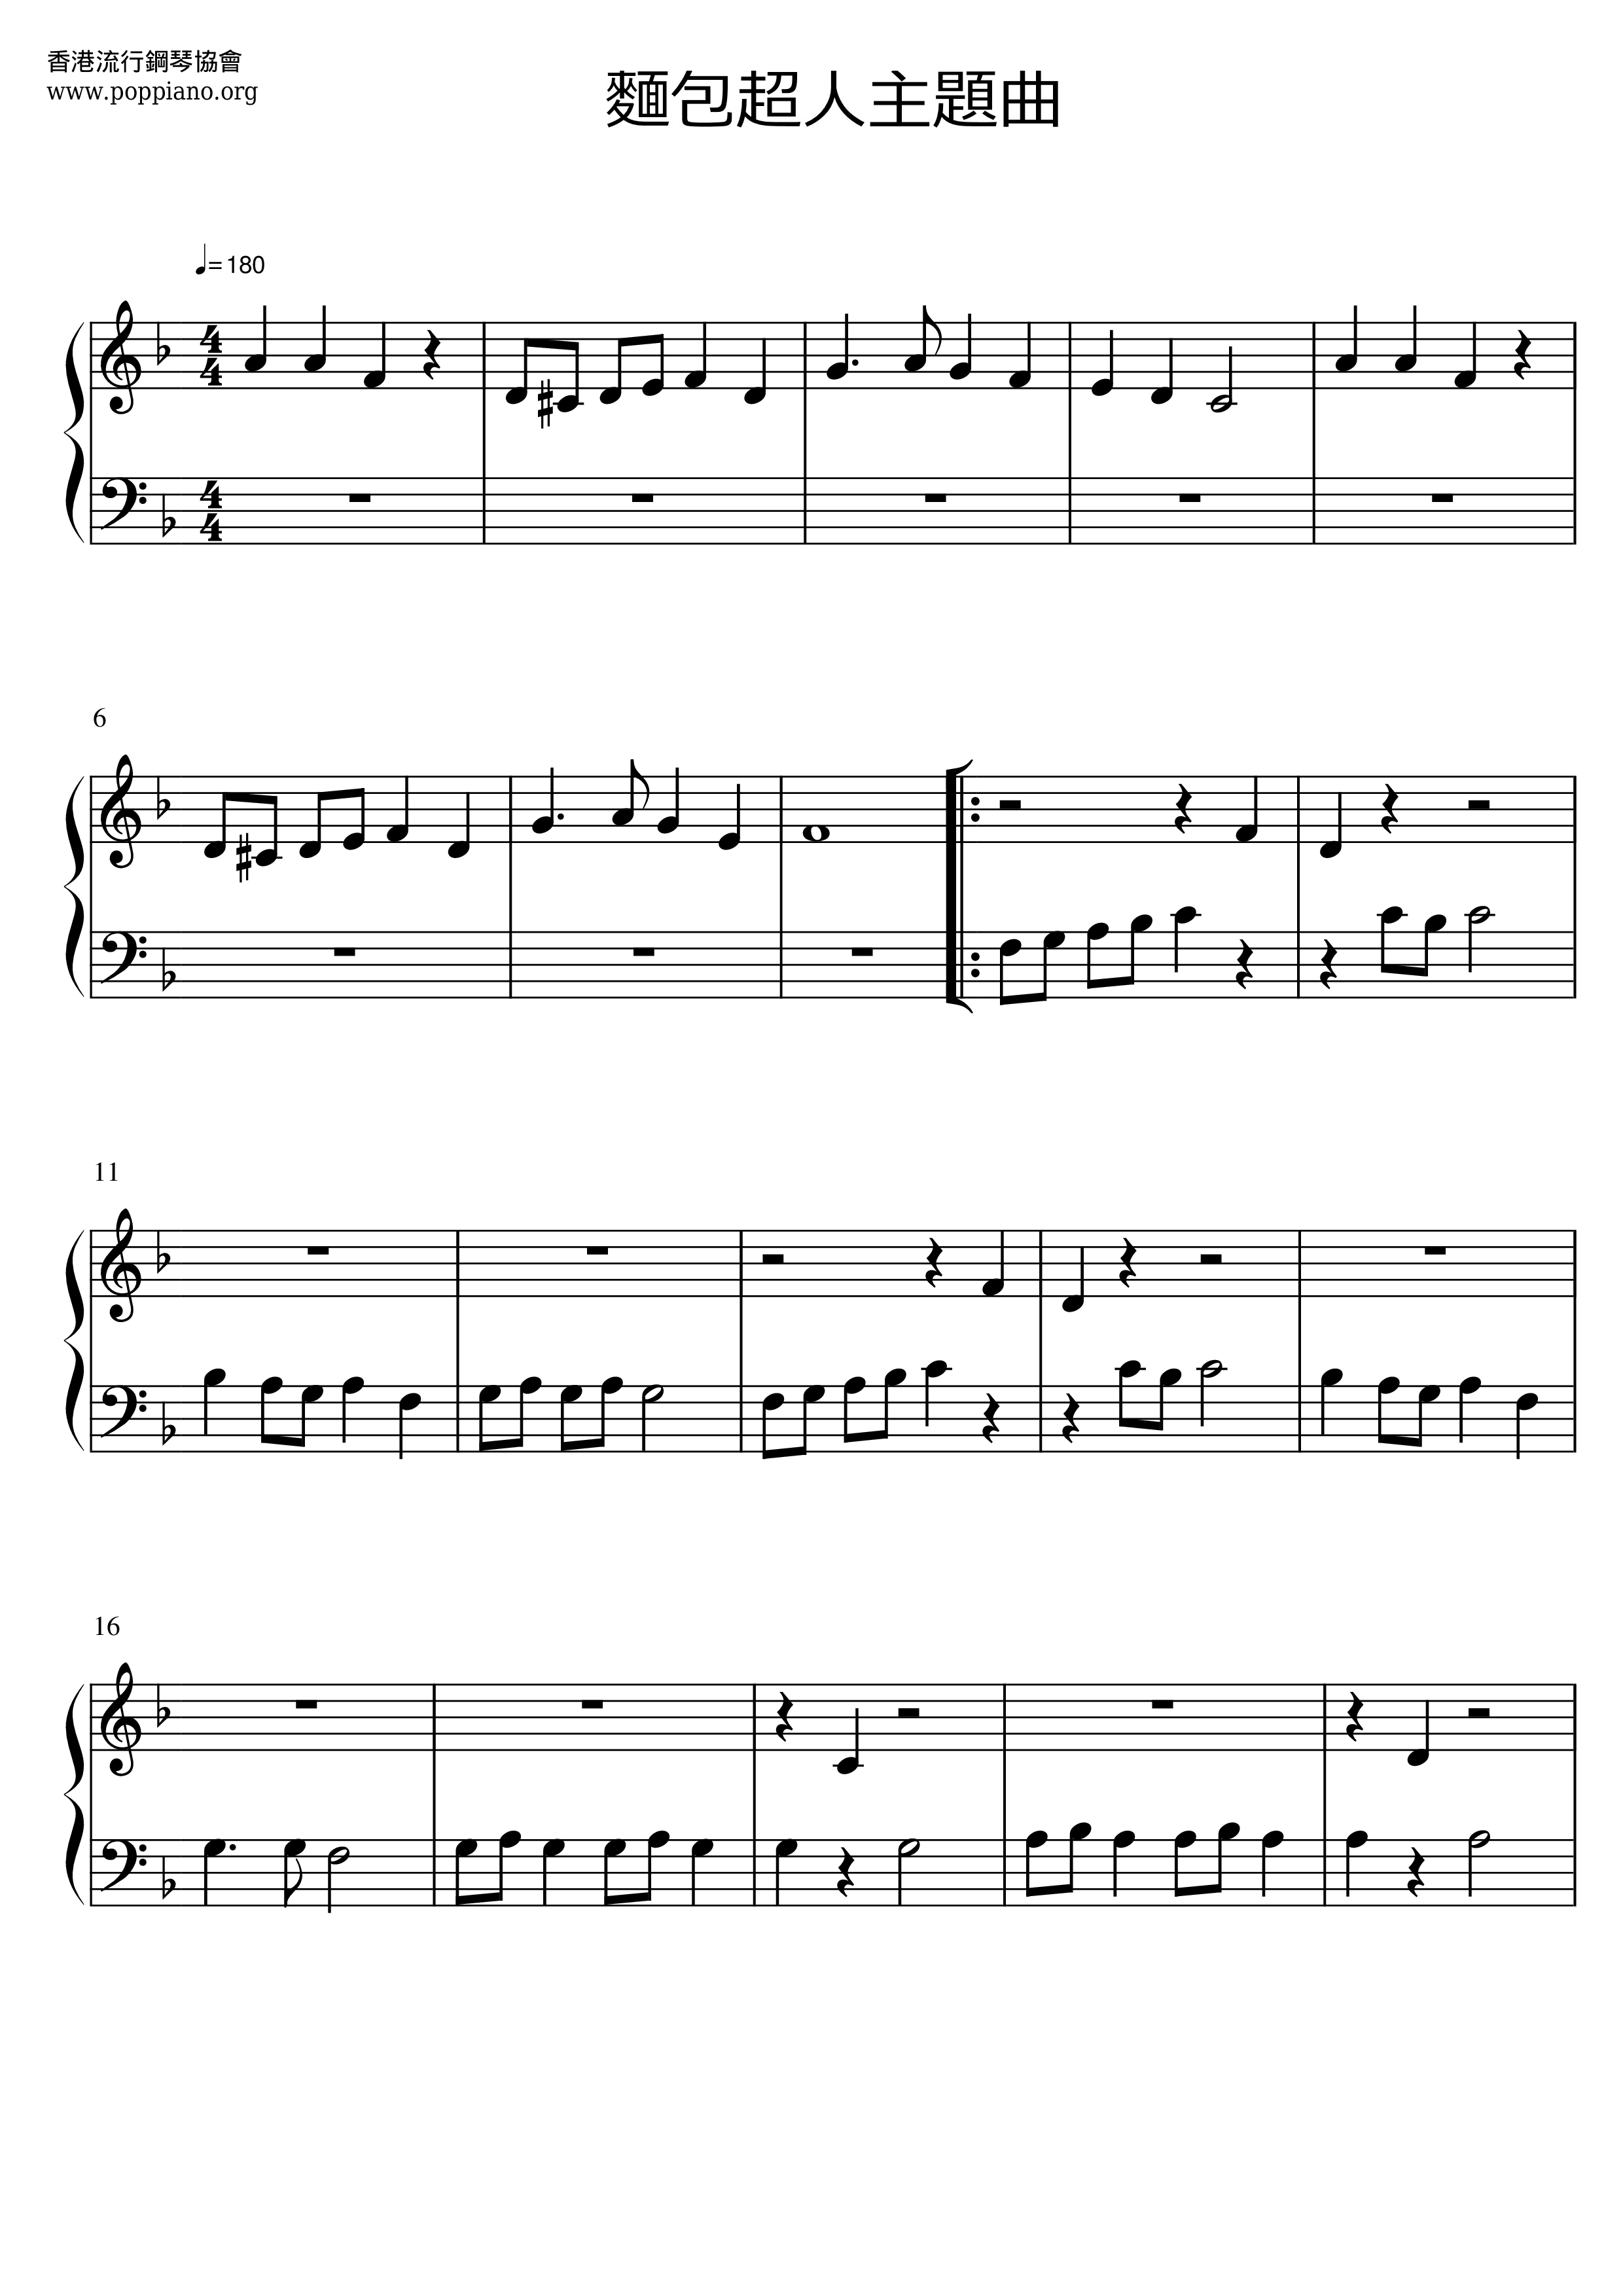 Anpanman Theme Song Score